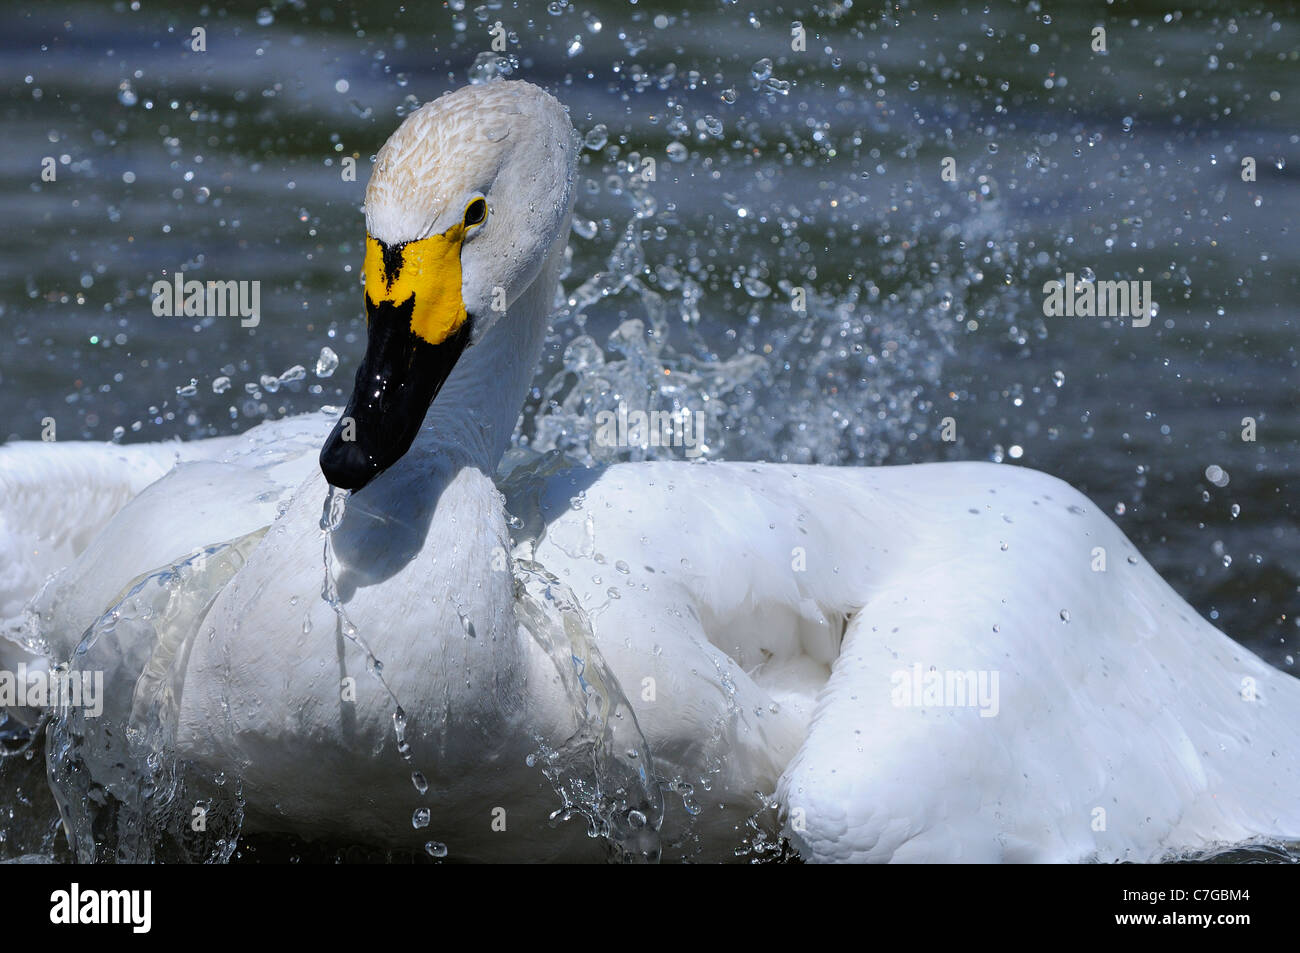 Bewick's Swan (Cygnus columbianus) sull'acqua, lavaggio, Slimbridge, REGNO UNITO Foto Stock